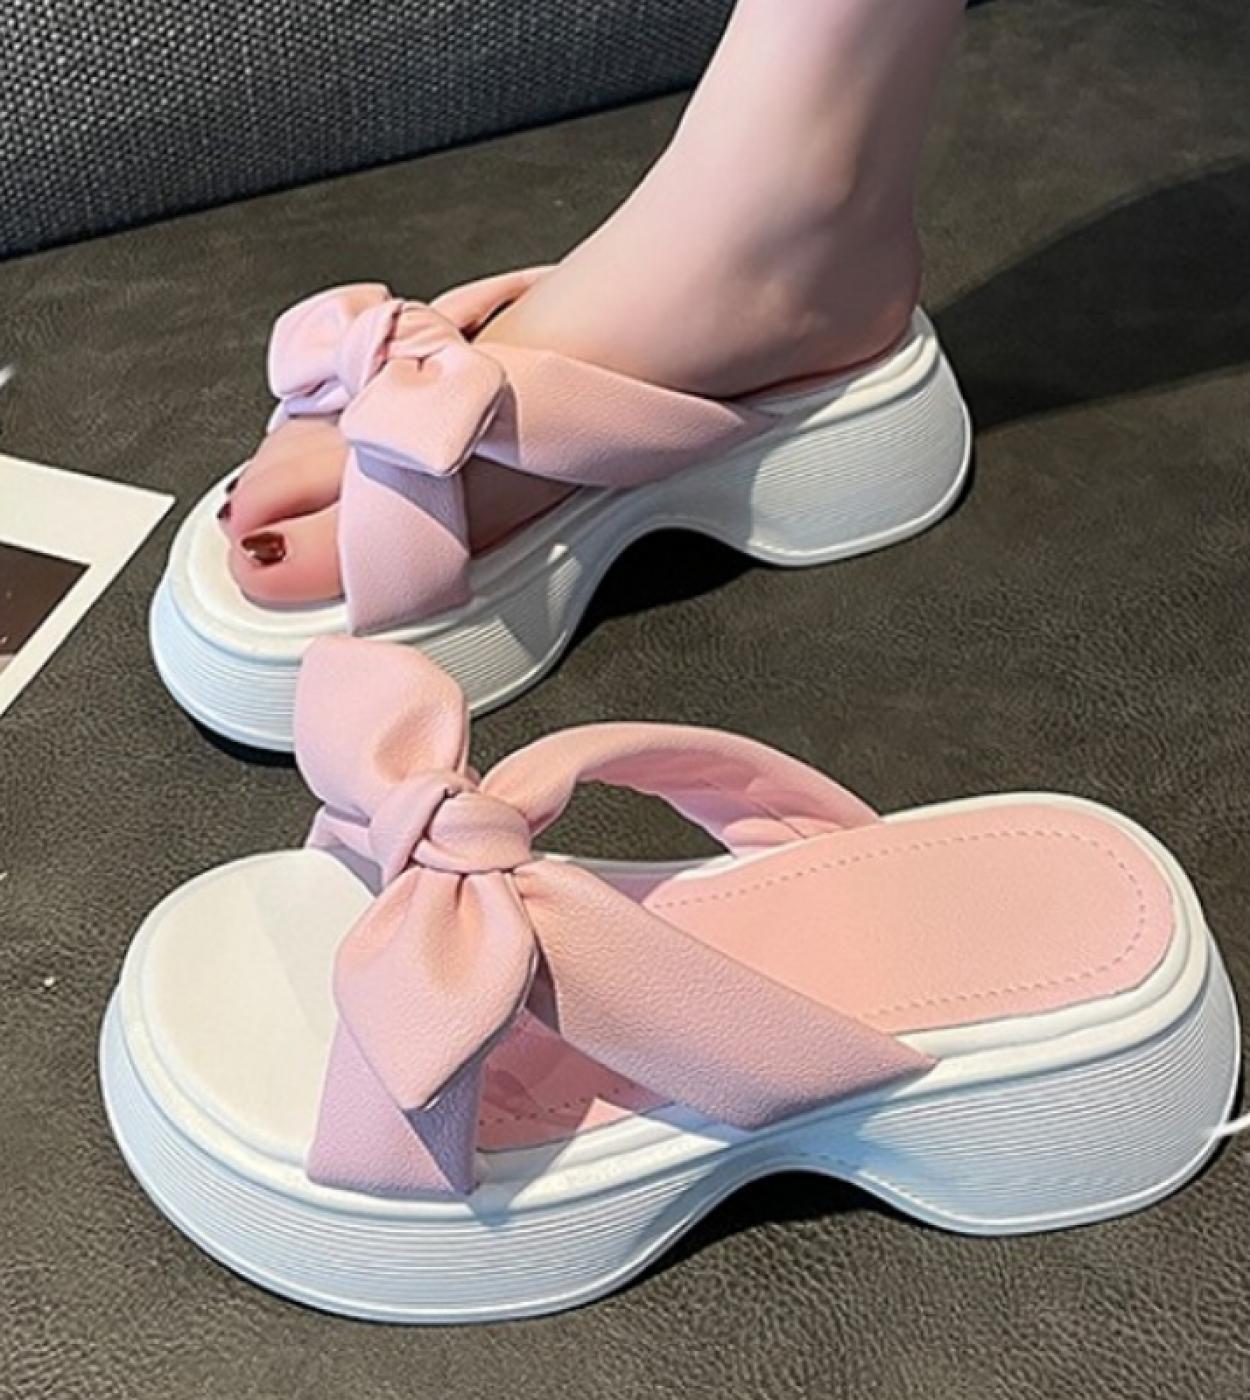 أحذية نسائية جديدة لعام 2023 شبشب كتان منزلي للنساء تصميم نسائي لطيف أحذية مريحة شرائح منصة للفصول الأربعة للأزواج Sa